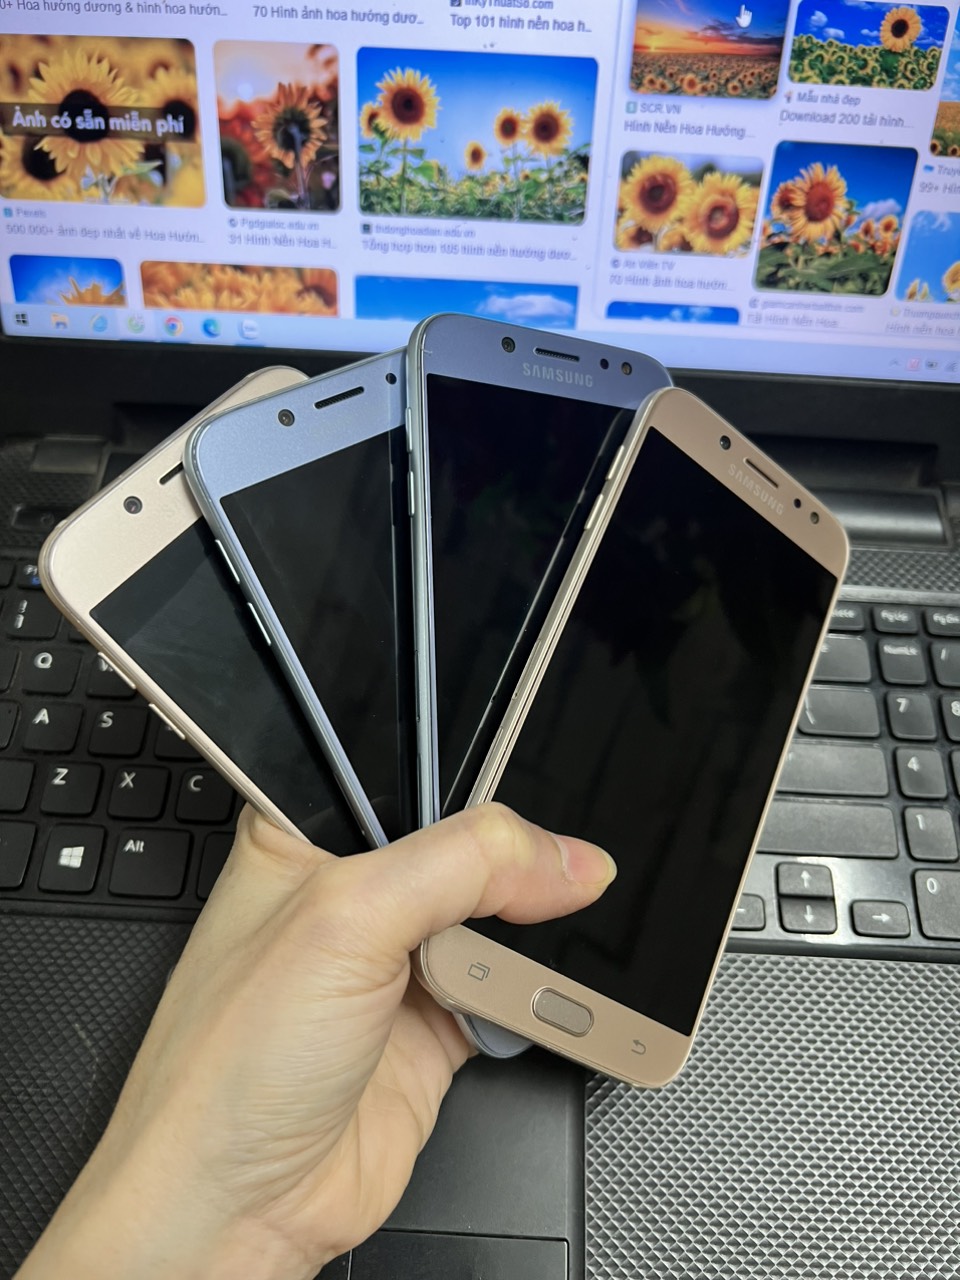 Samsung Galaxy J7 Pro 2sim: Trải nghiệm tuyệt vời với chiếc điện thoại Samsung Galaxy J7 Pro 2 sim mới nhất, với thiết kế cực kỳ sang trọng và tính năng đáng kinh ngạc. Hãy sẵn sàng để khám phá nhiều tính năng mới trên chiếc điện thoại này và sở hữu trải nghiệm điện thoại đỉnh cao ngay hôm nay.